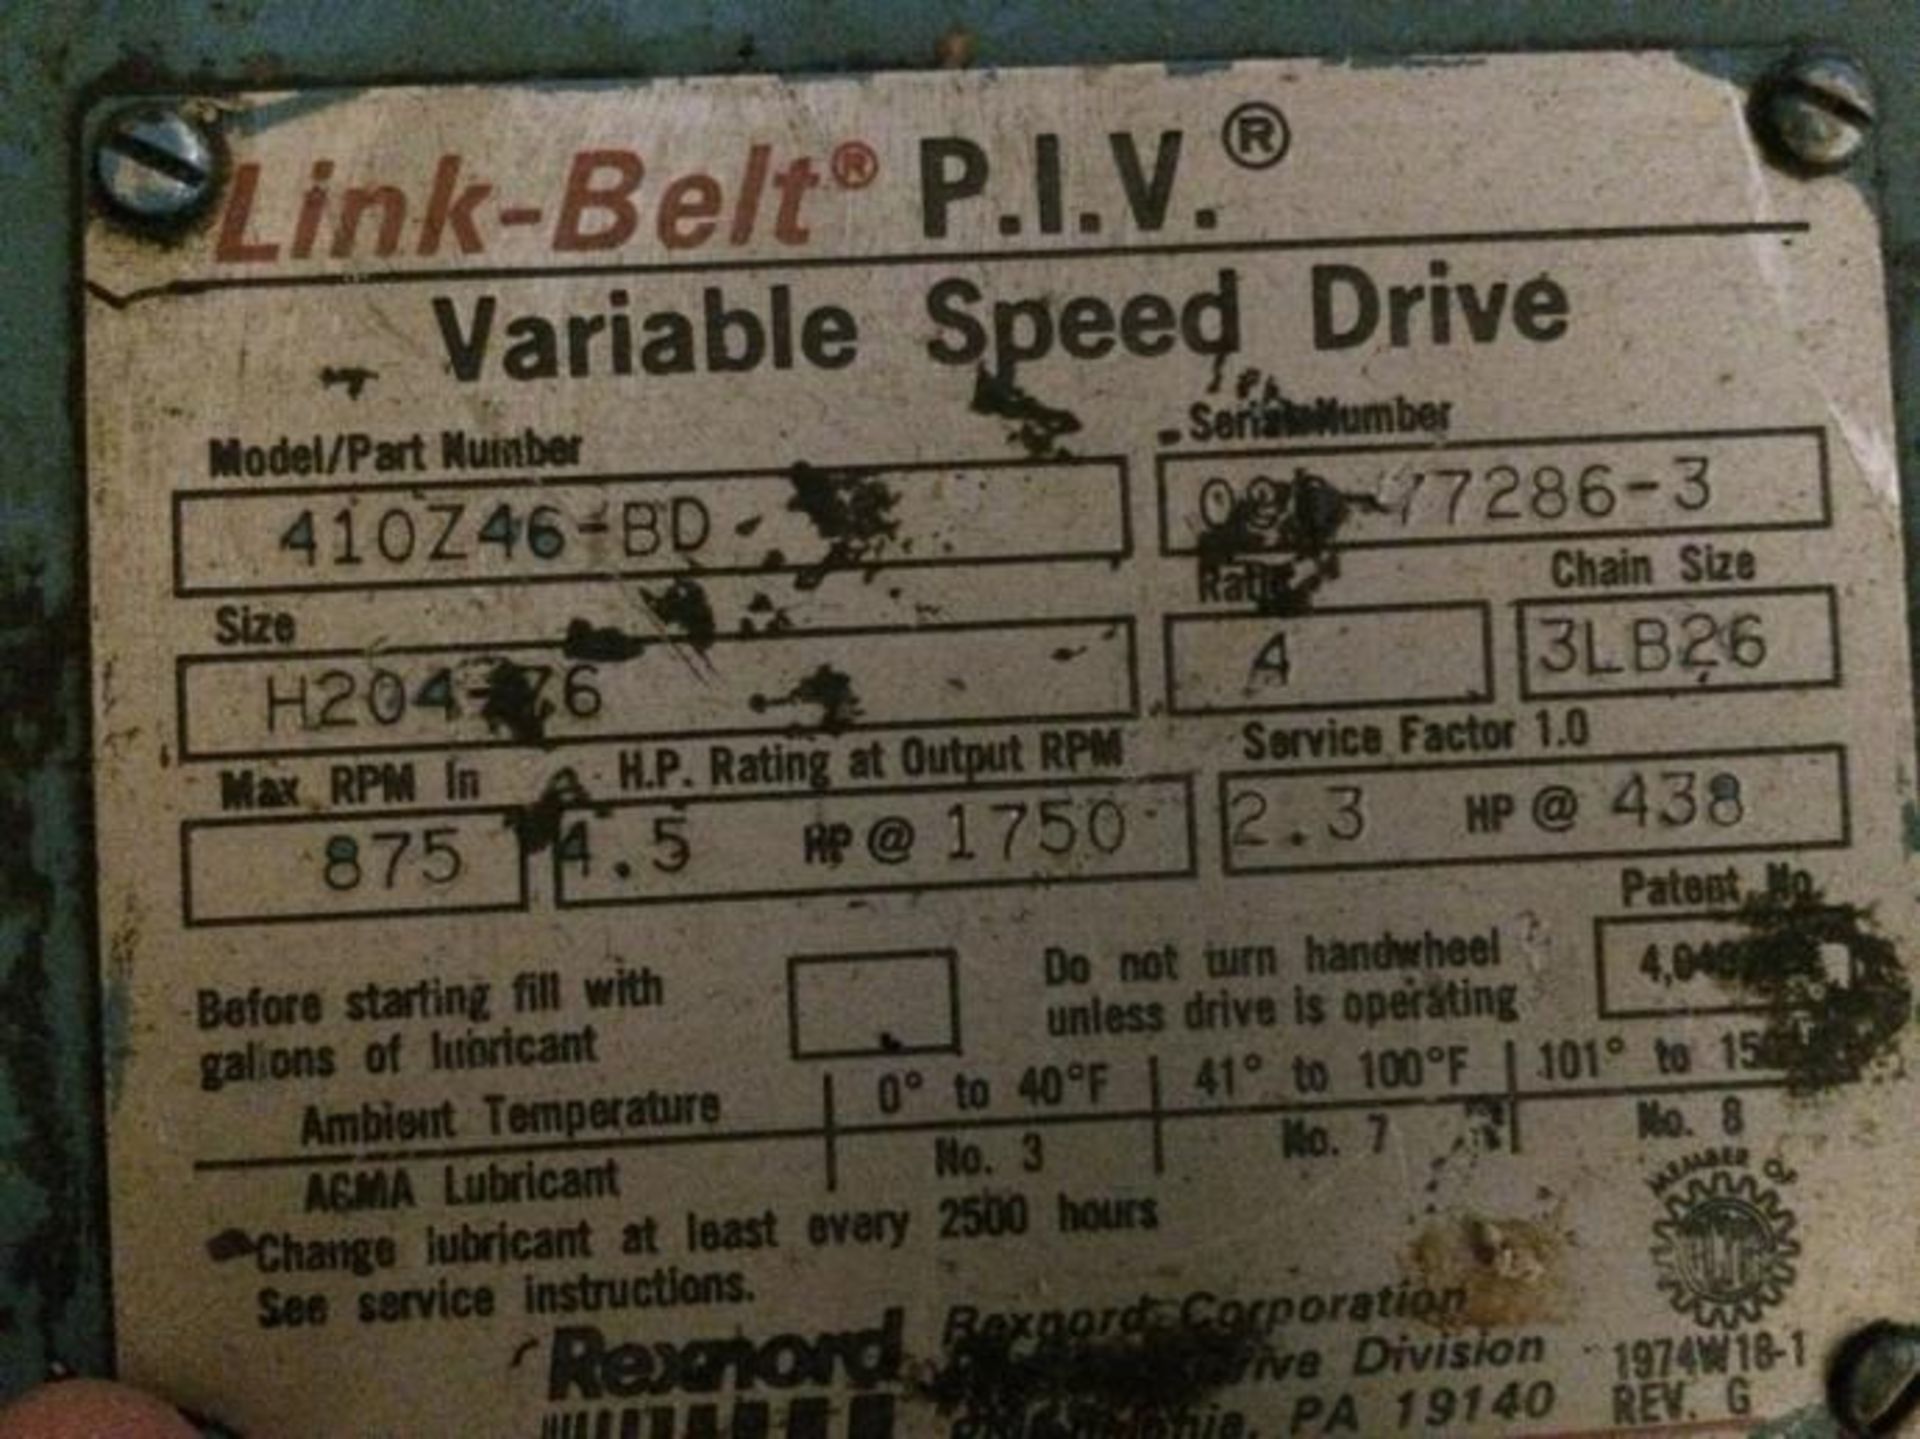 Variateur de vitesse link-belt - Link Belt P.I.V.200 Variable Speed Drive - Image 2 of 2